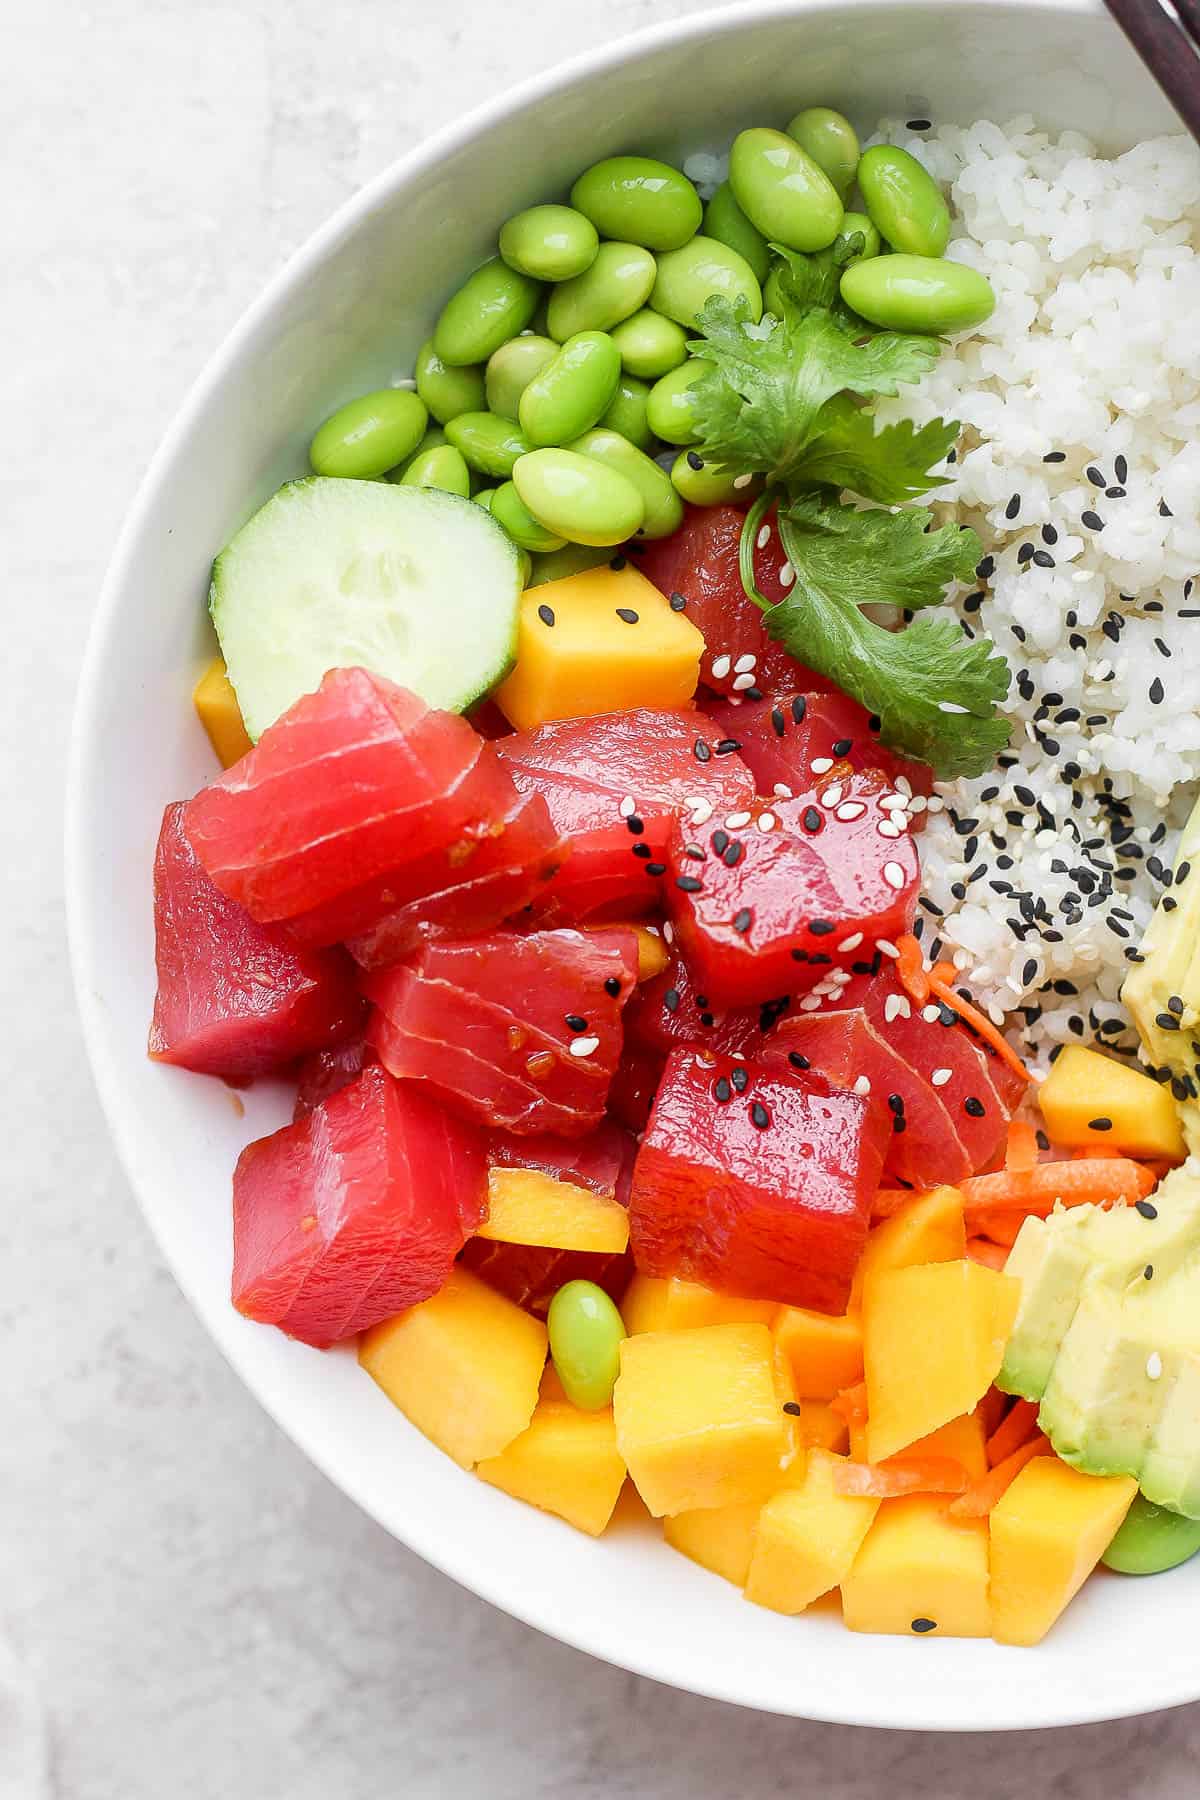 Tuna poke bowl with sushi rice, edamame, cucumber, mango, avocado and cilantro. 